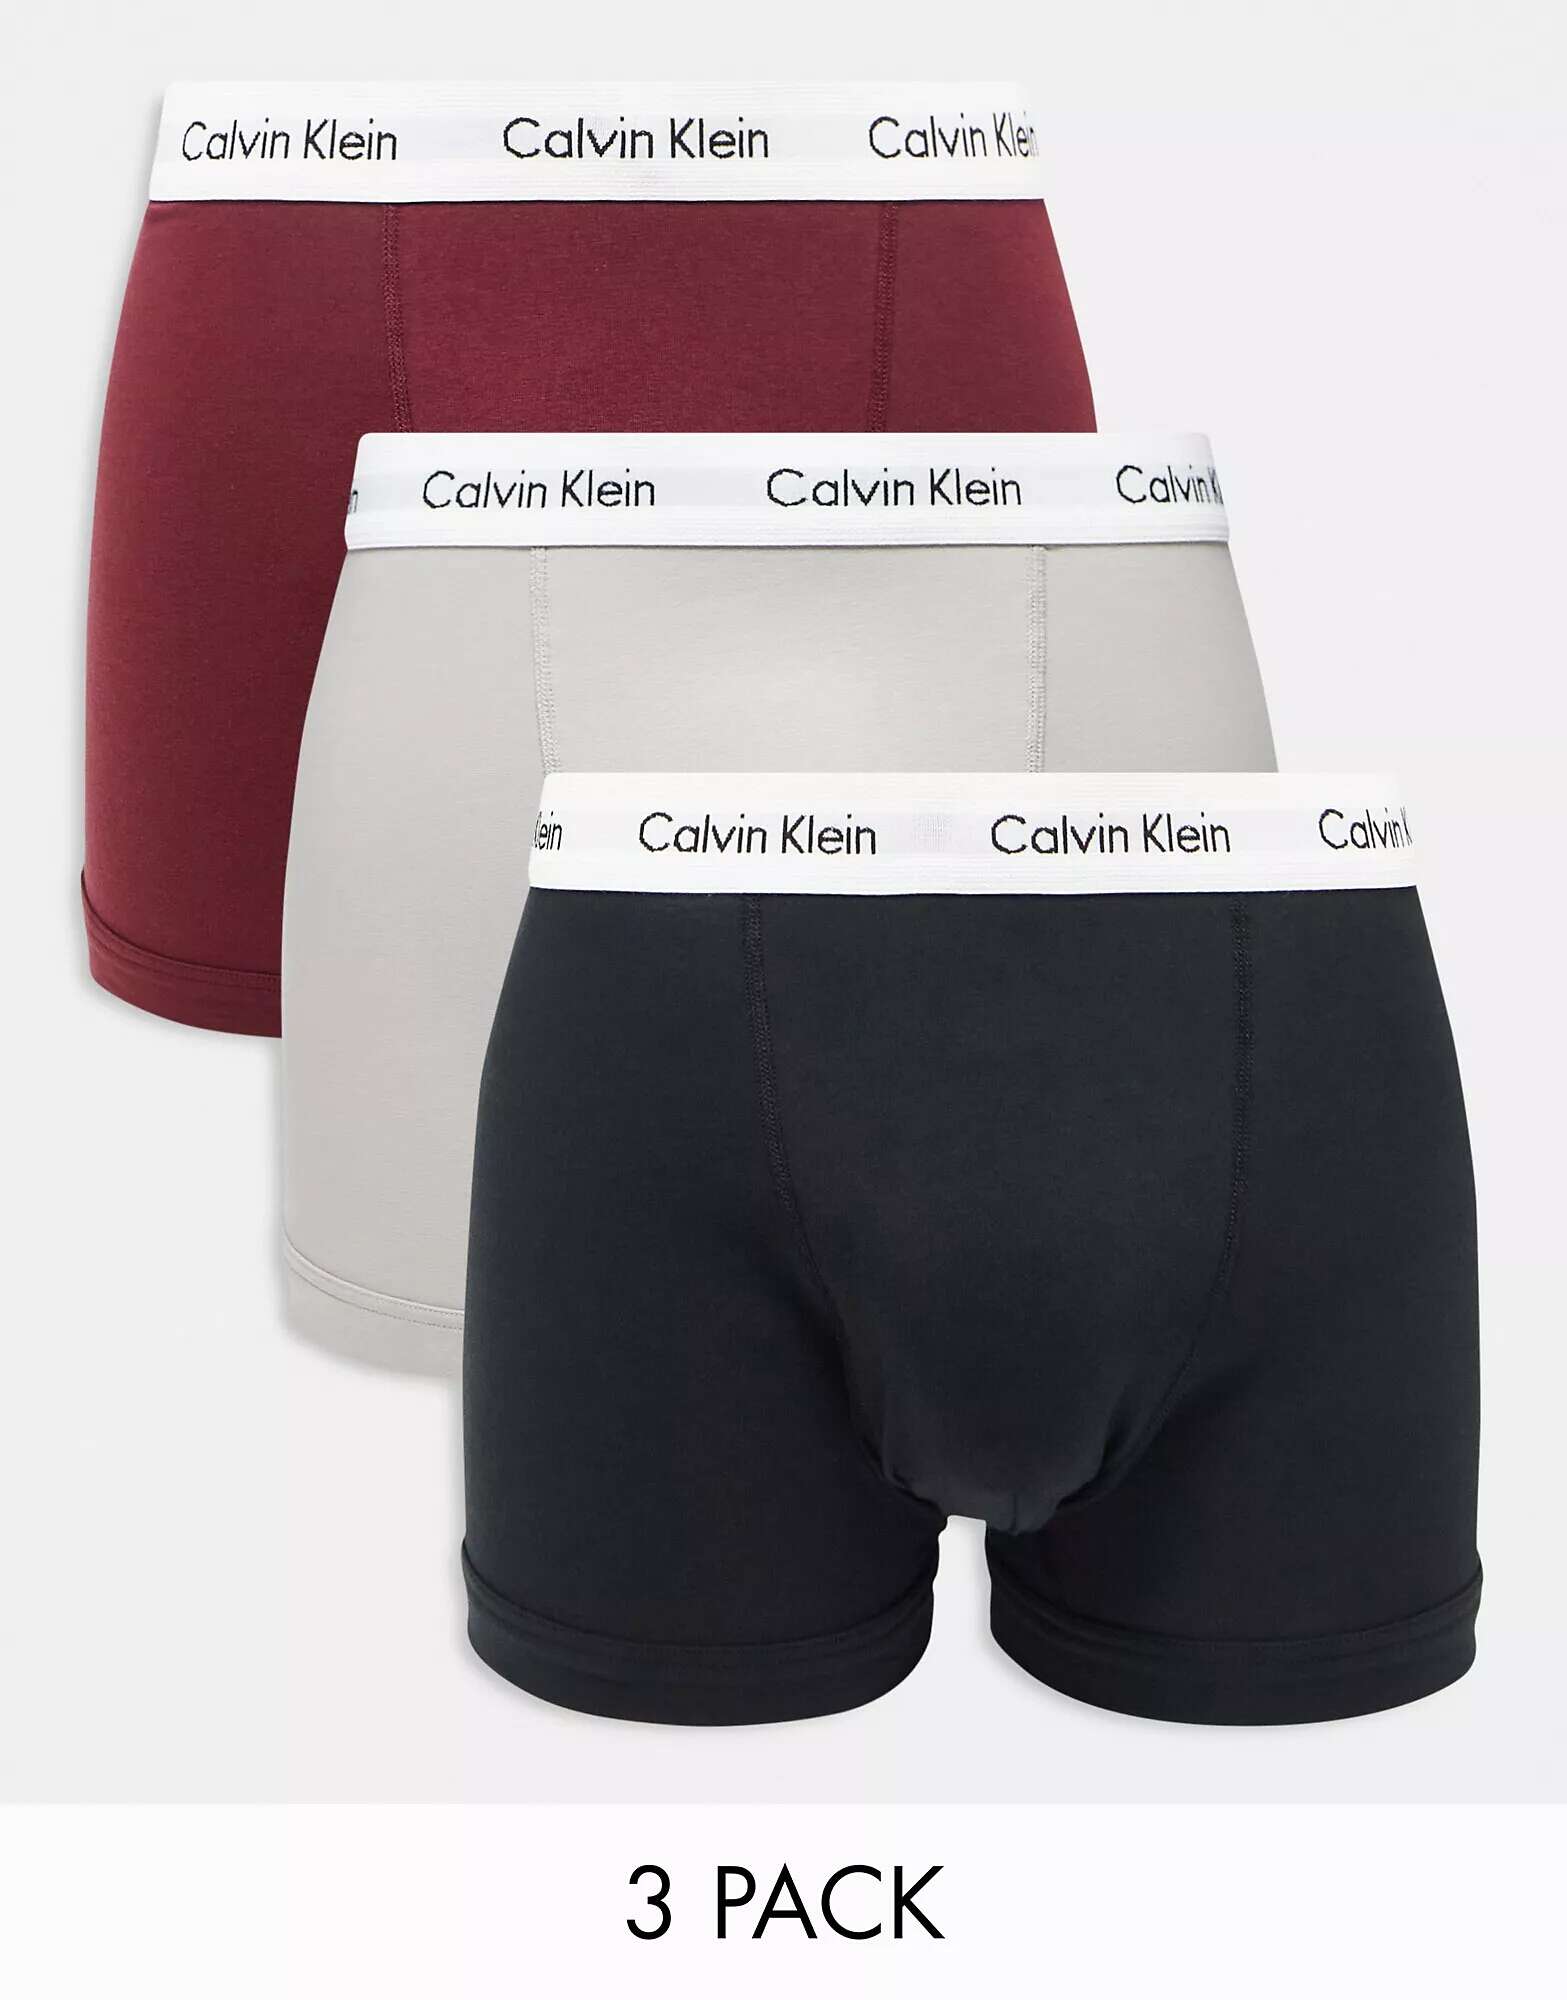 цена Три пары плавок Calvin Klein черного, серого и бордового цвета